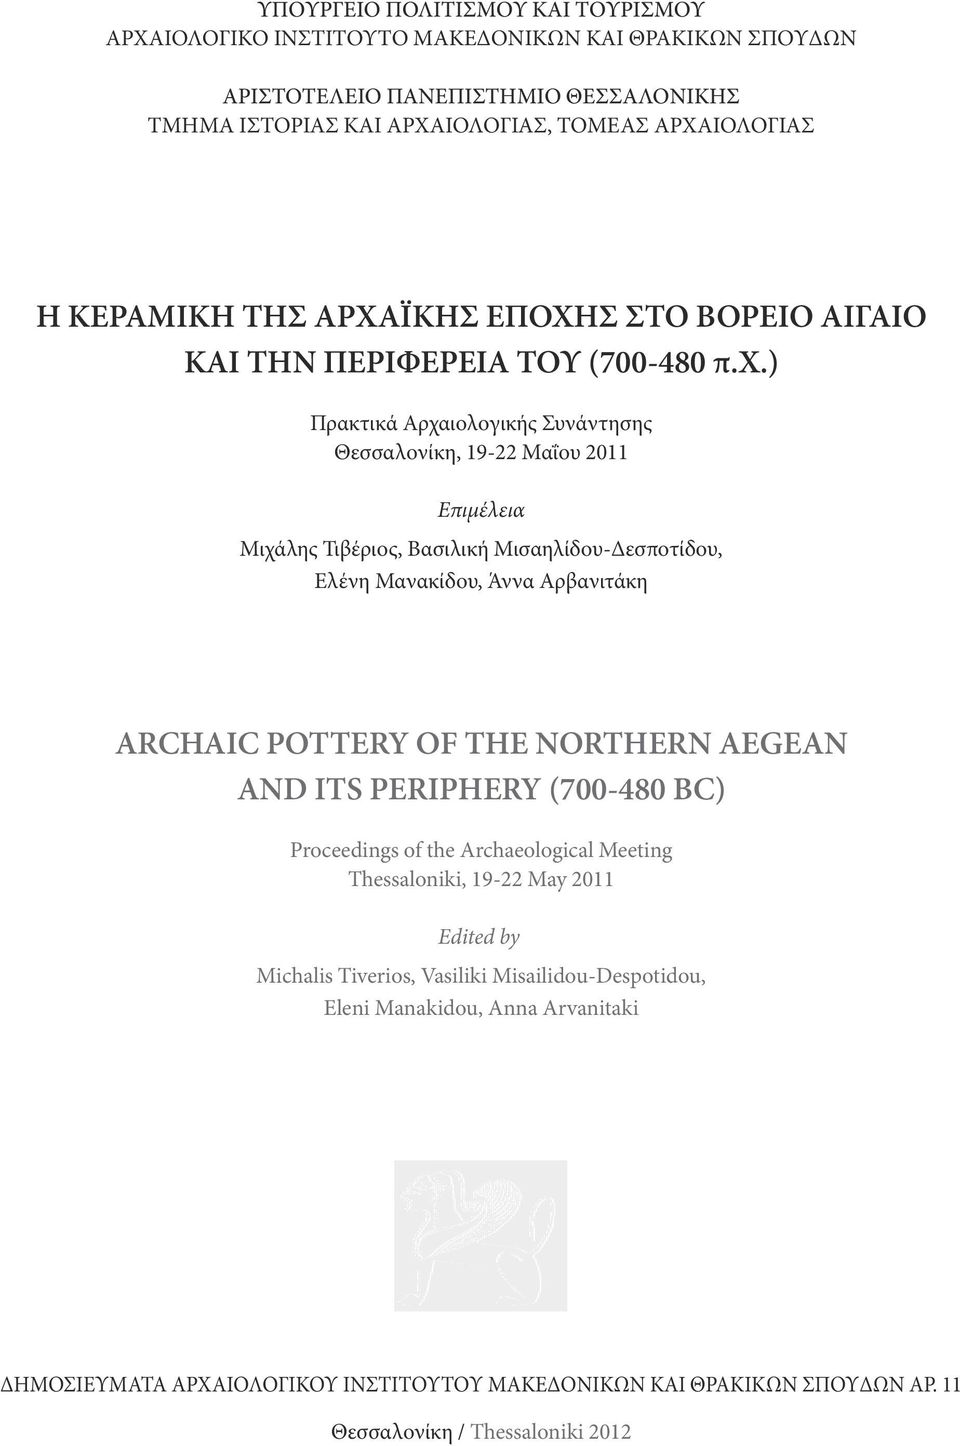 ) Πρακτικά Αρχαιολογικής Συνάντησης Θεσσαλονίκη, 19-22 Μαΐου 2011 Επιμέλεια Μιχάλης Τιβέριος, Βασιλική Μισαηλίδου-Δεσποτίδου, Ελένη Μανακίδου, Άννα Αρβανιτάκη ΑRCHAIC POTTERY OF THE NORTHERN